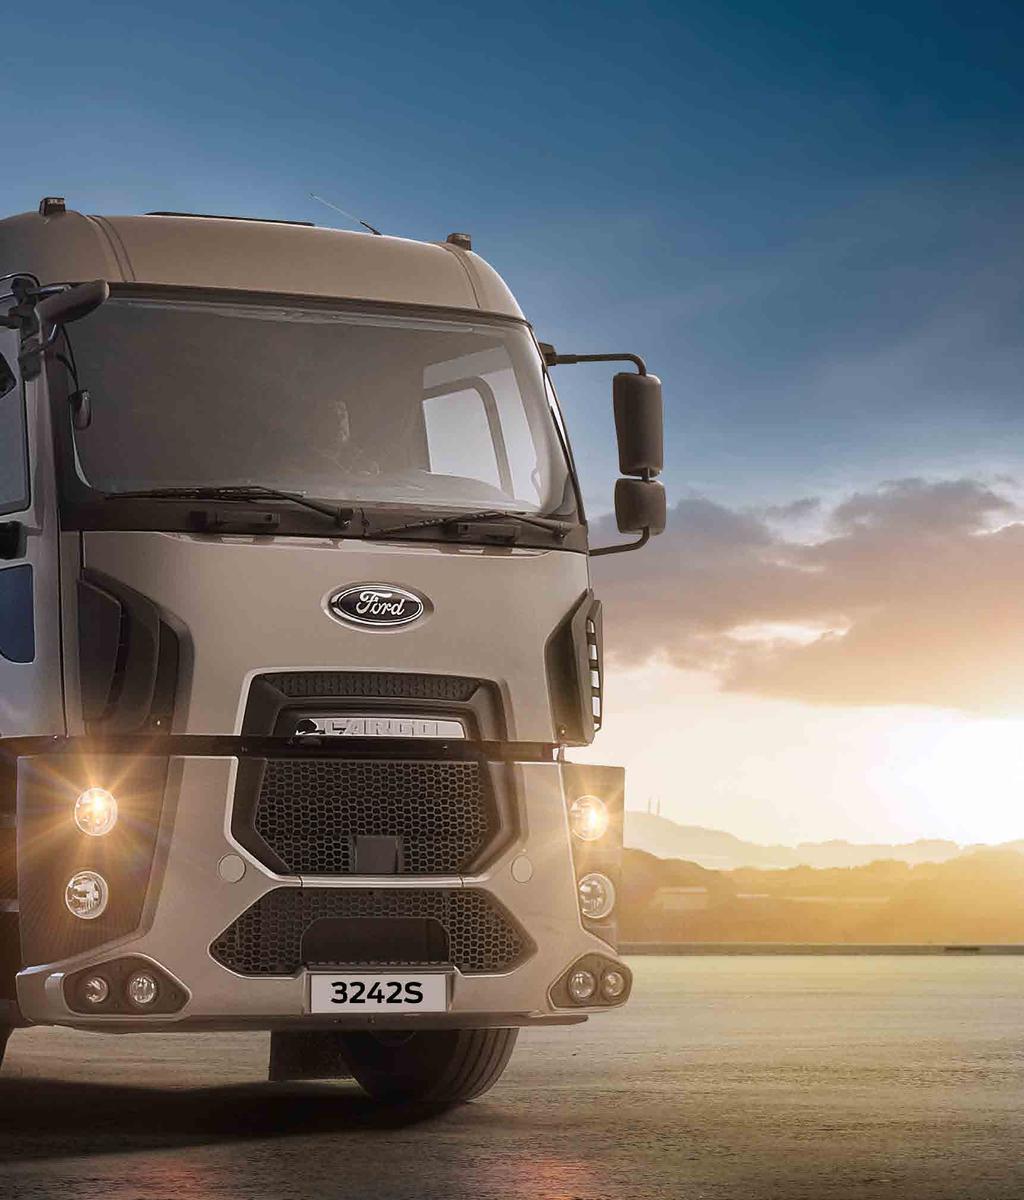 A veszély elkerülhető! Mindent kézben tartunk! A megújult Ford Trucks közúti járműsorozat új dimenzió a veszélyes áruk szállításában.